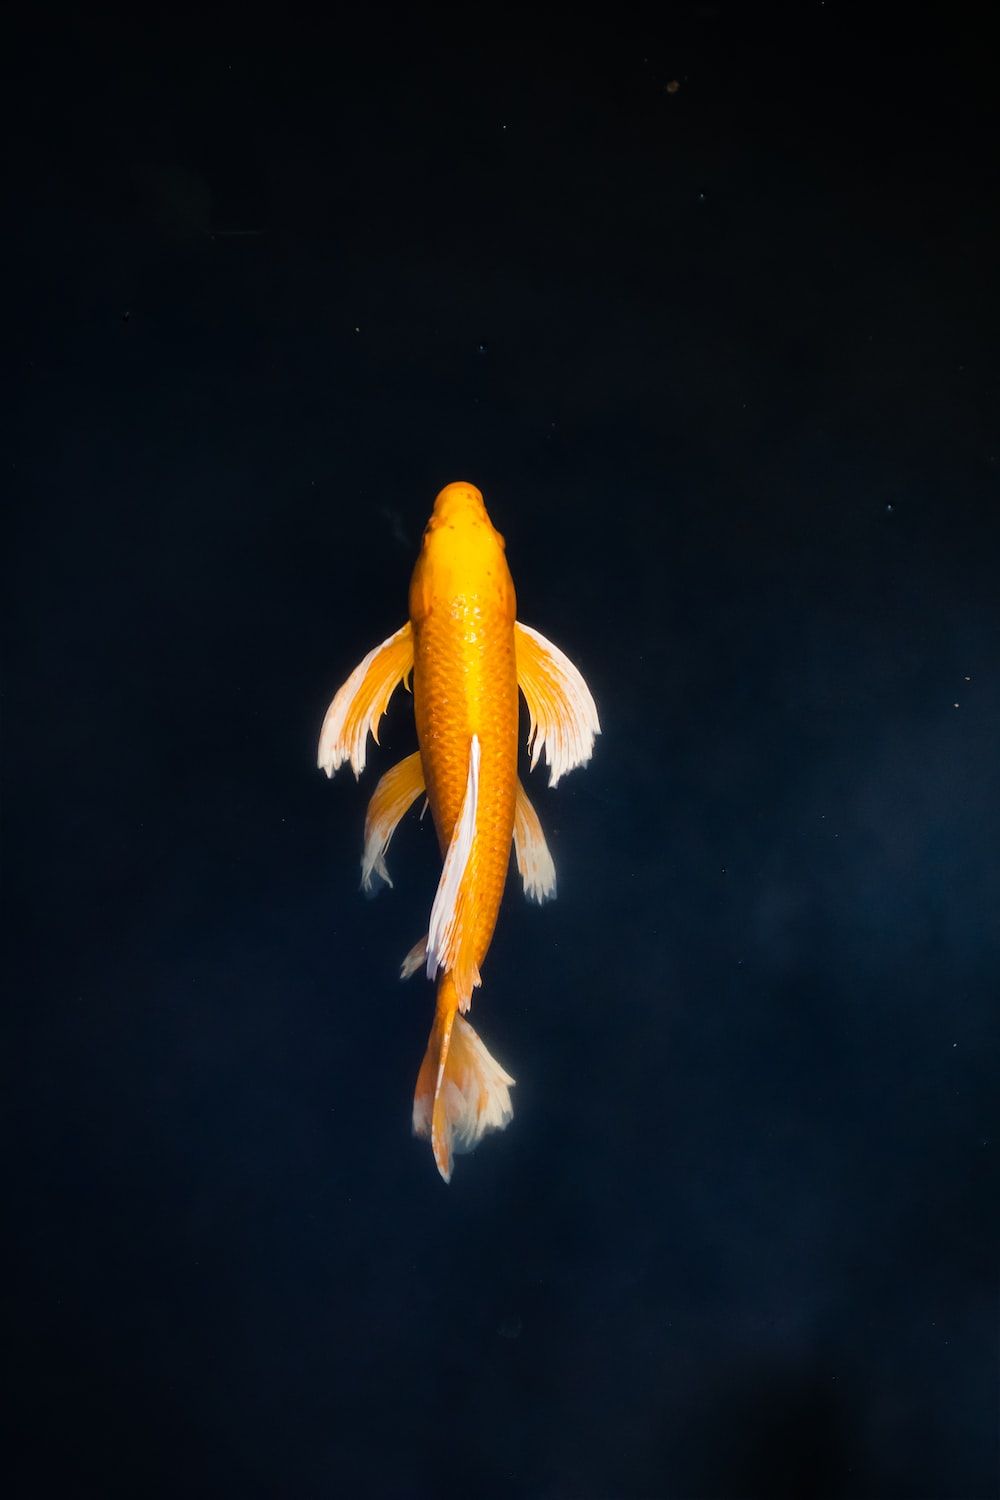 A goldfish swims in the dark water - Koi fish, fish